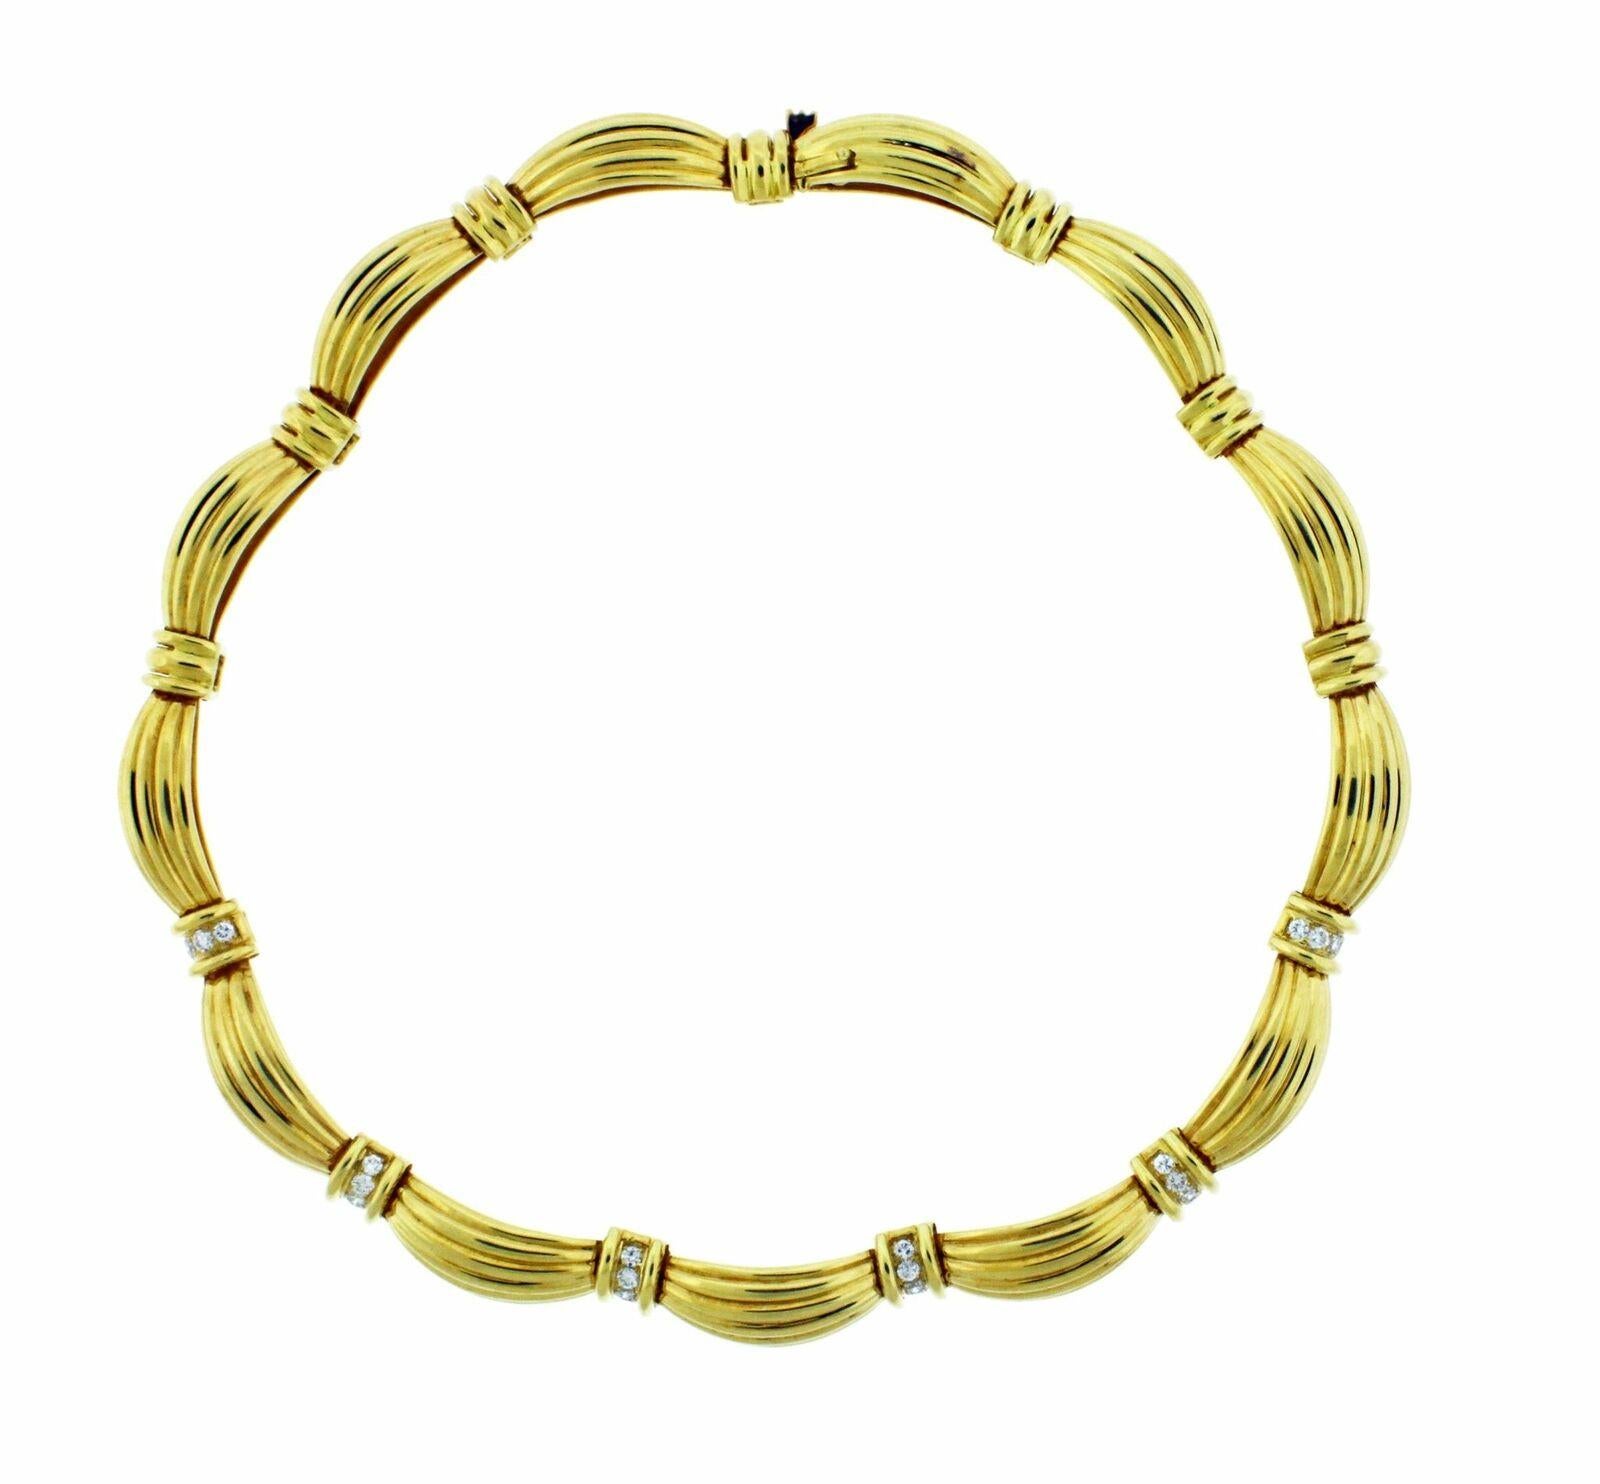 100% authentisch in neuem Zustand.

Besuchen Sie unser anderes Angebot für passende Armbänder und Ohrringe. 

O. J. Perrin Diamant-Halskette ist in 18k Gelbgold sehr selten.

Gewicht der Diamanten ............................. Etwa 2